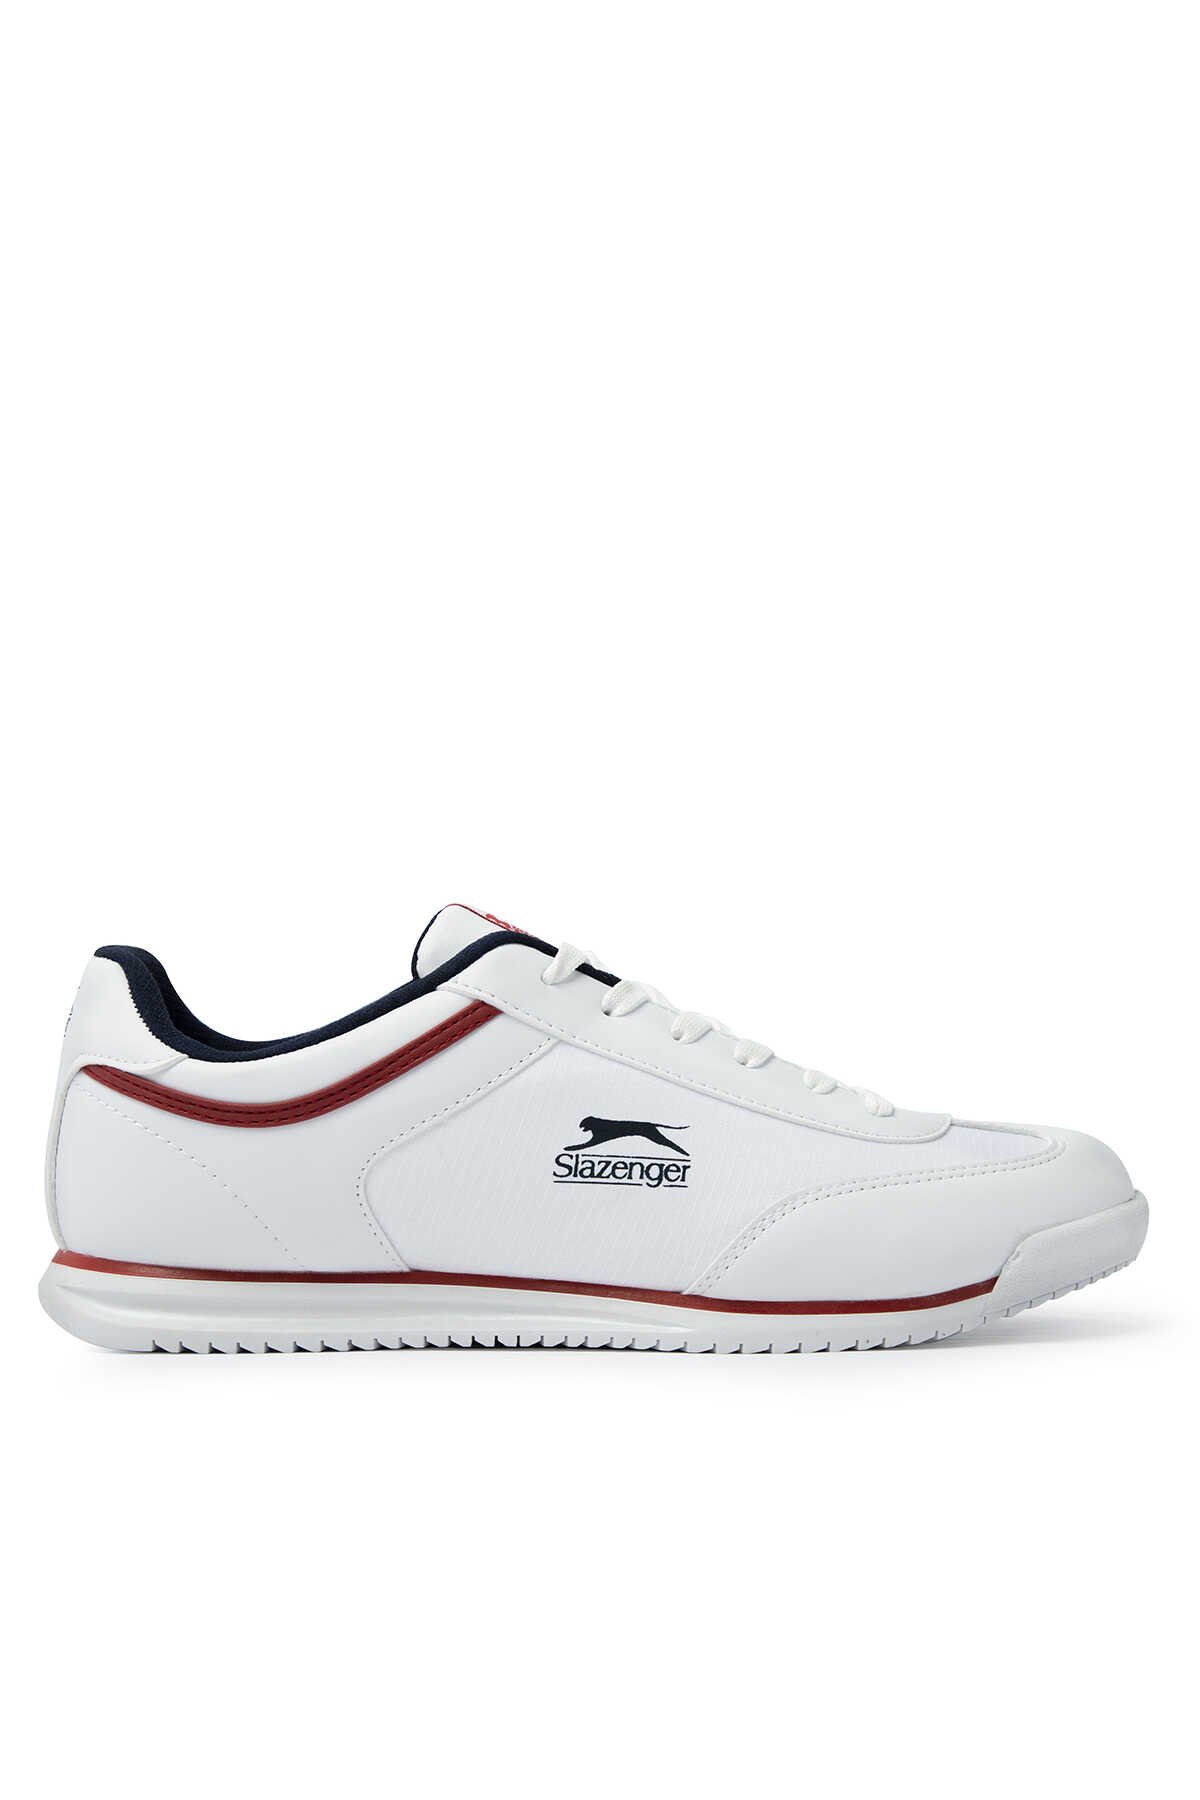 Slazenger - Slazenger MOJO I Sneaker Erkek Ayakkabı Beyaz / Kırmızı